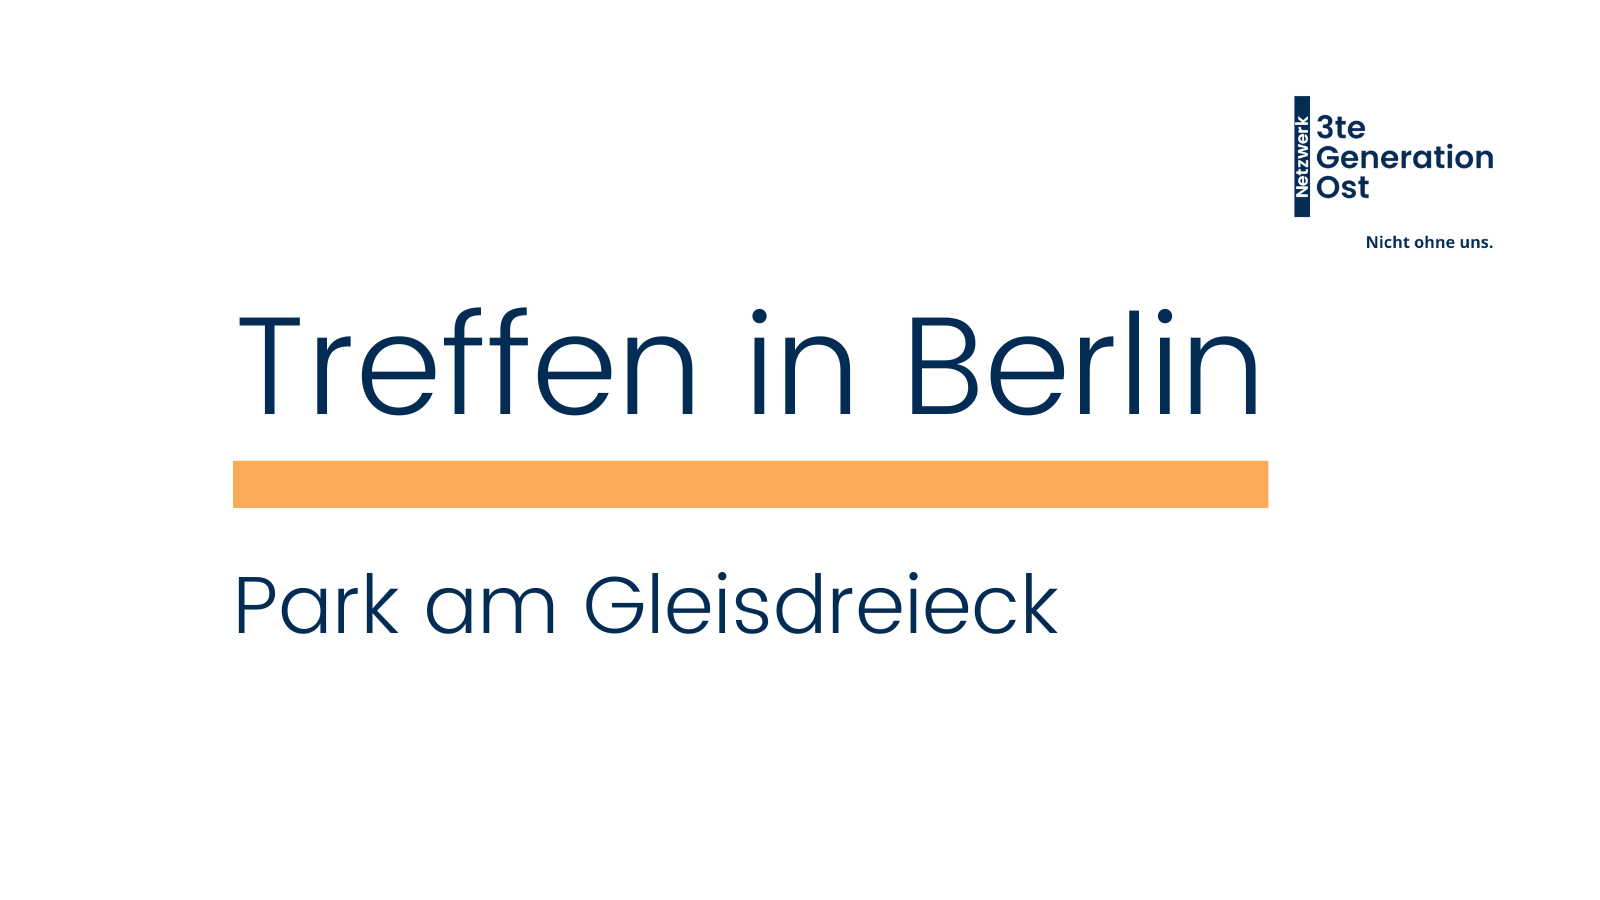 Logo Netzwerk 3te Generation Ost oben rechts. Mittig platziert in dunkelblau - Treffen in Berlin Park am Gleisdreieck) mit orangenem Unterstrich